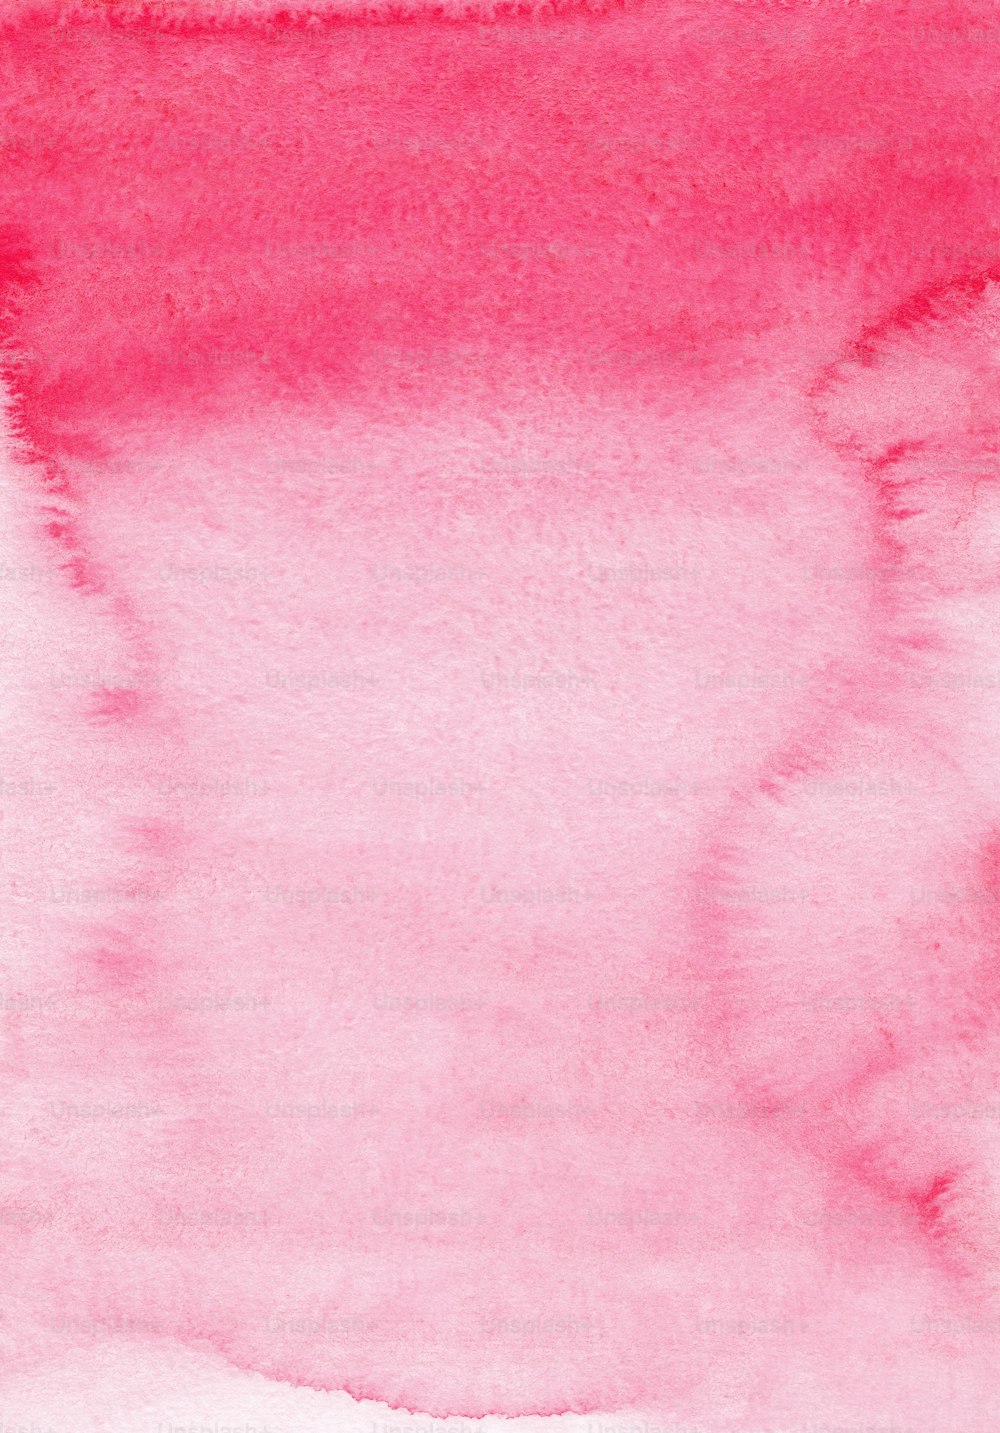 un fond aquarelle rose avec une bordure blanche